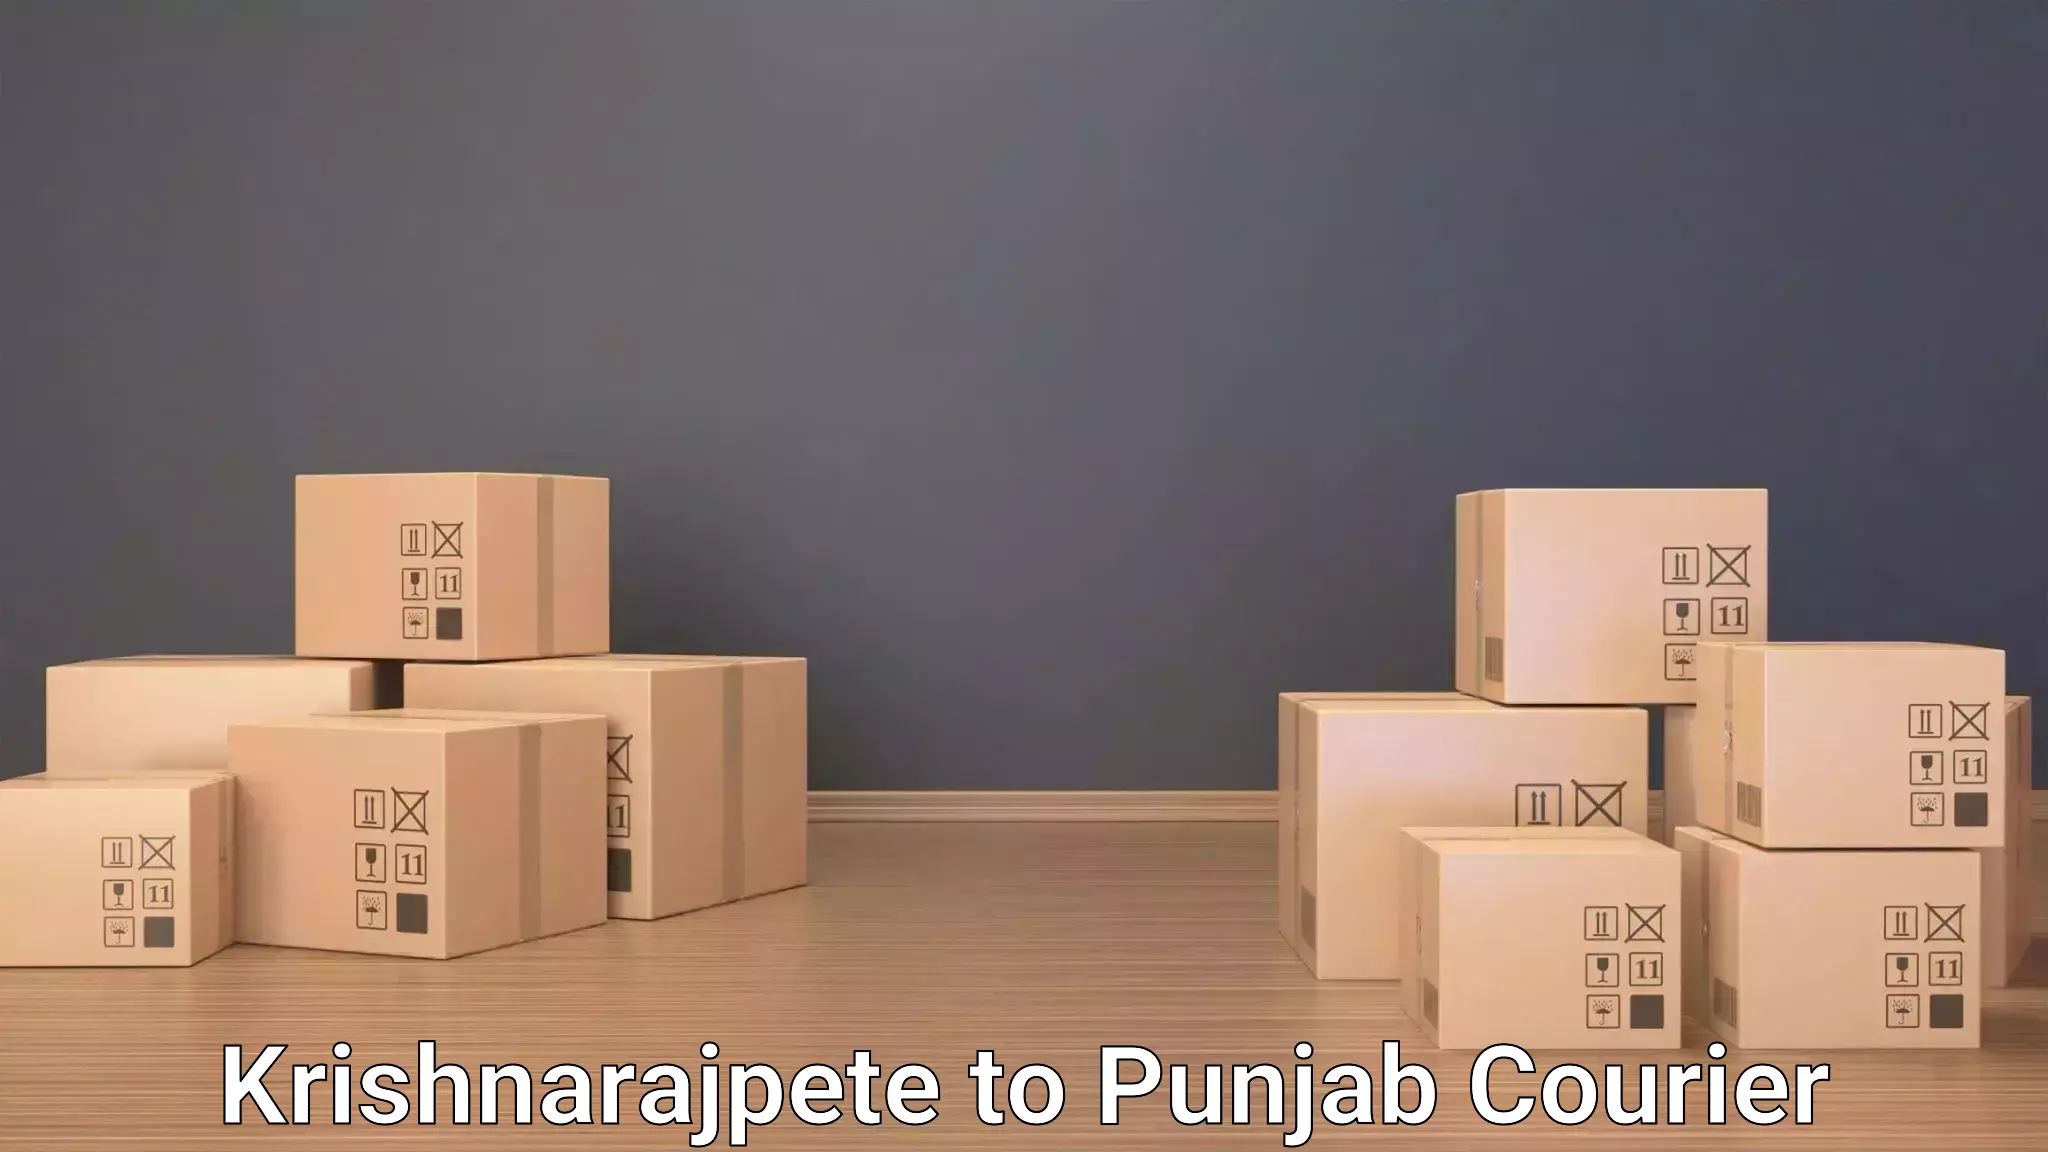 Luggage shipment strategy Krishnarajpete to Central University of Punjab Bathinda